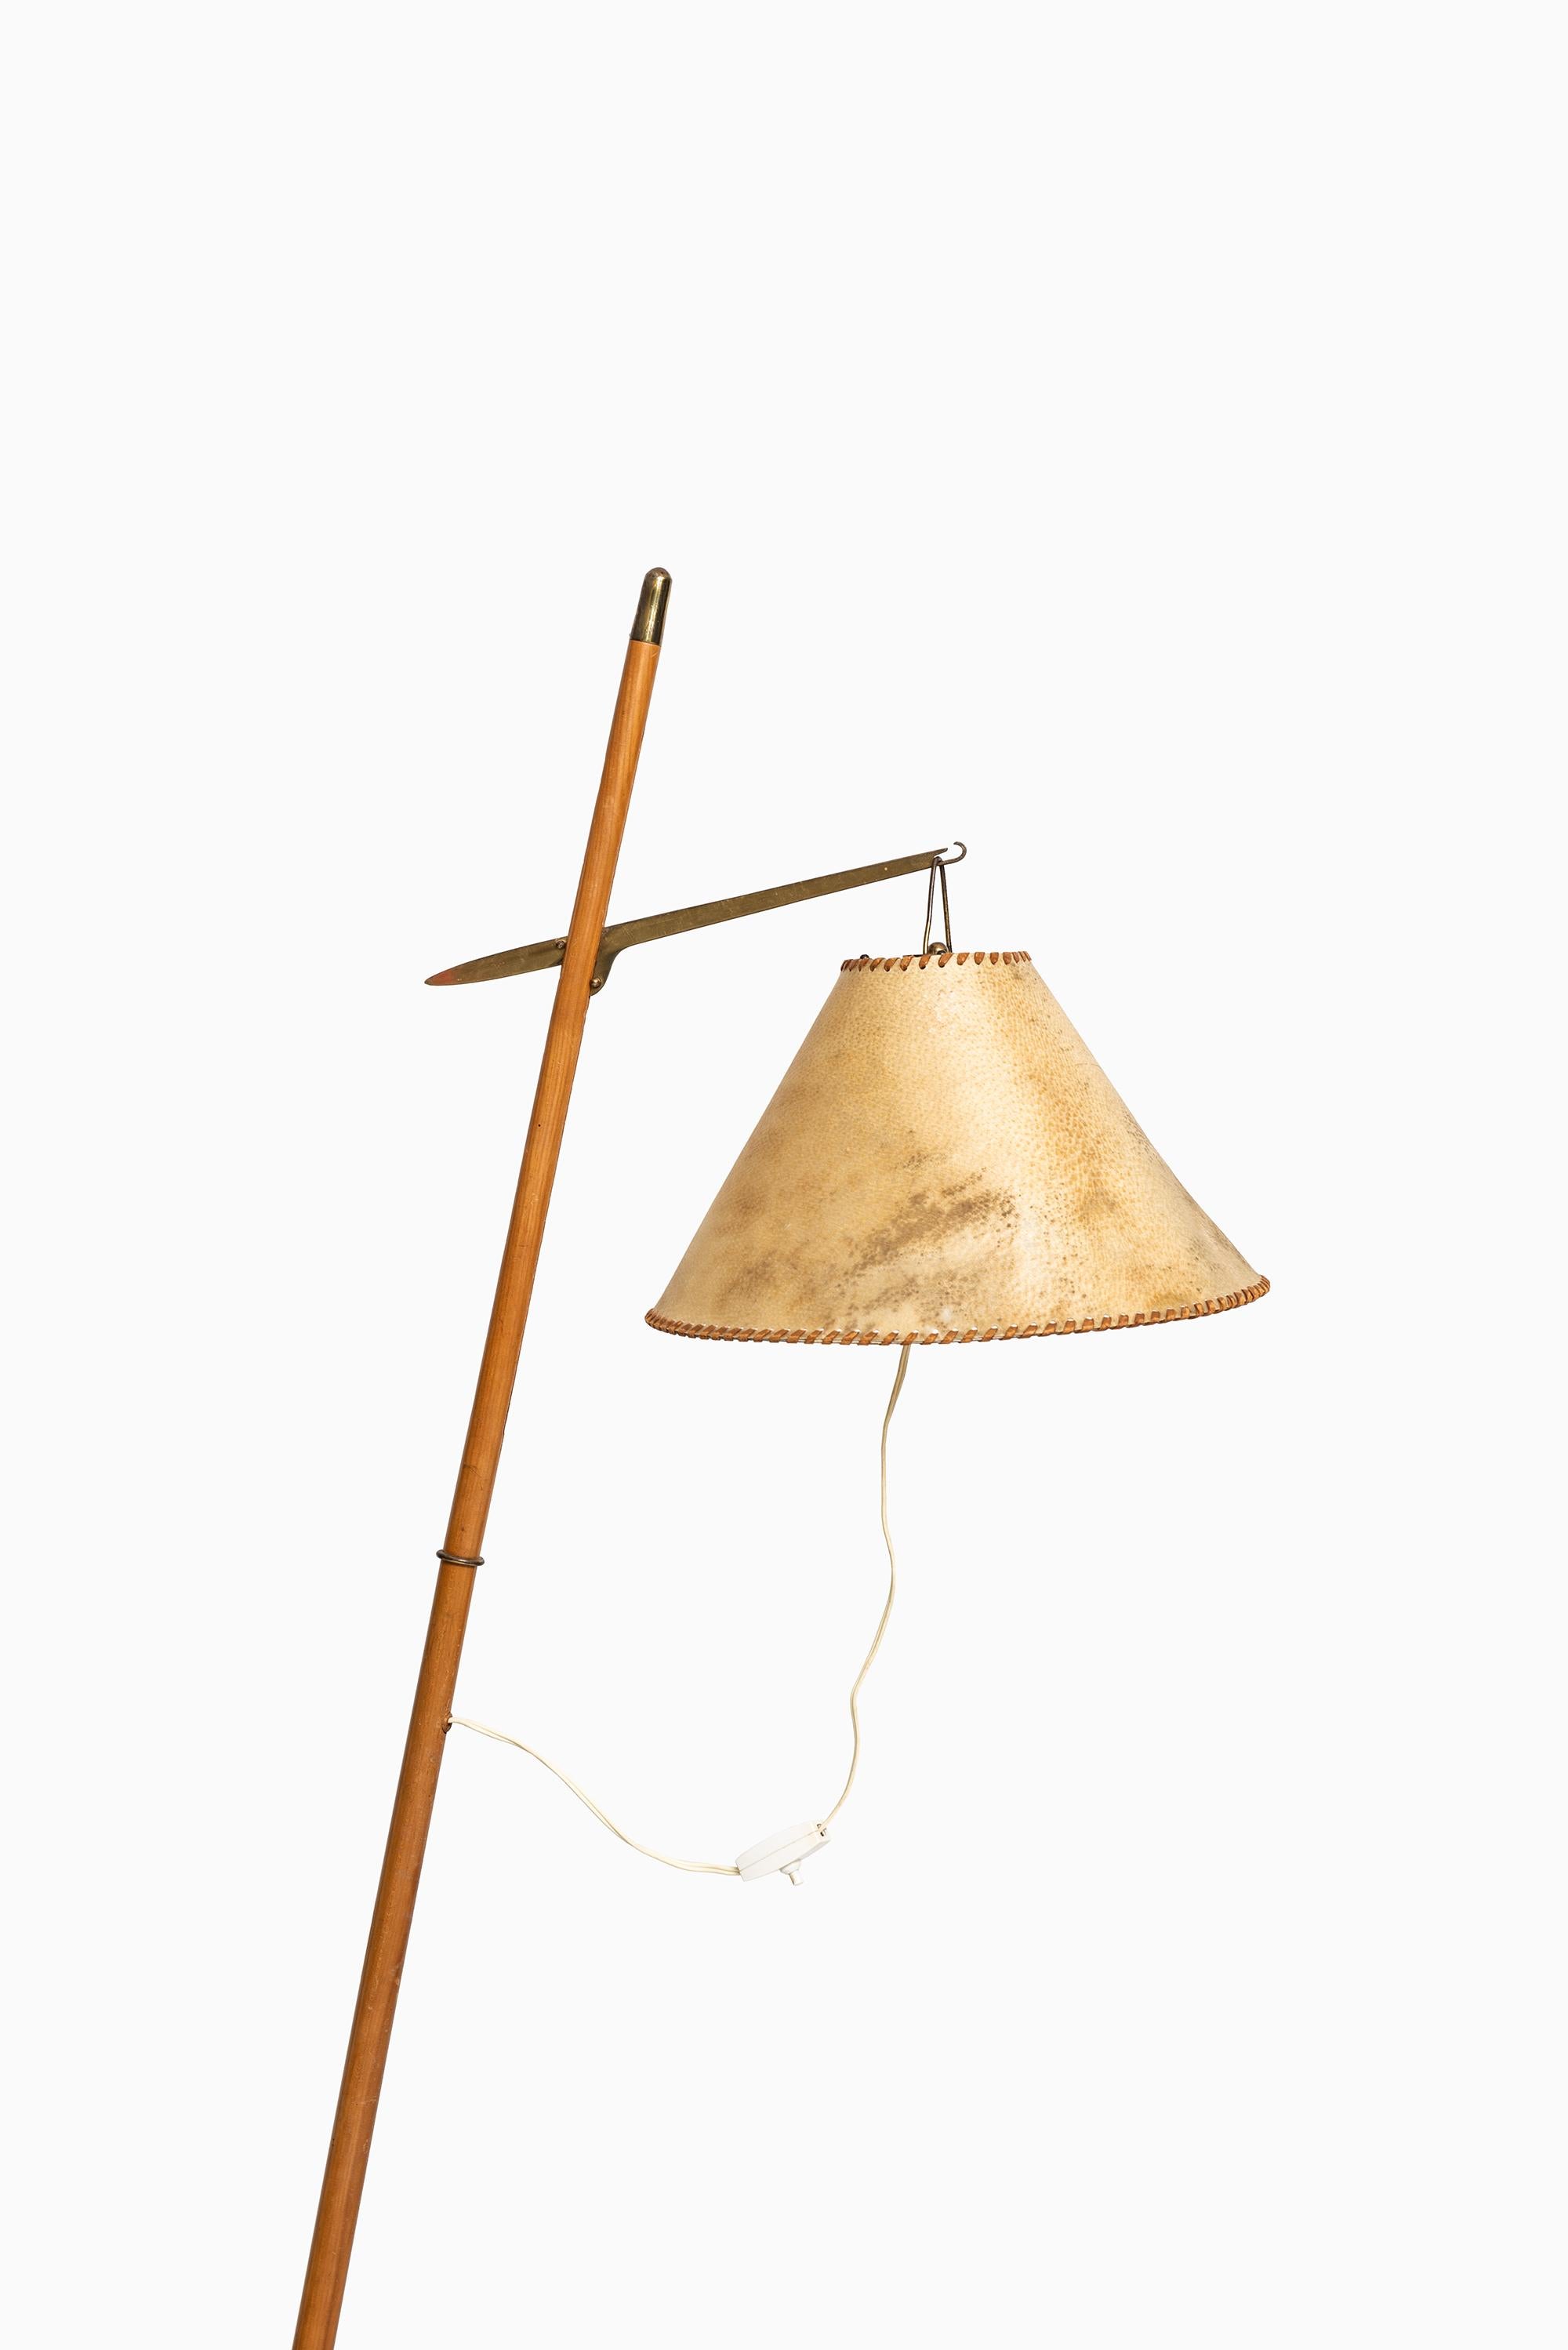 Sehr seltene Stehlampe, die J.T. Kalmar zugeschrieben wird. Wahrscheinlich von J.T. Kalmar in Österreich hergestellt.